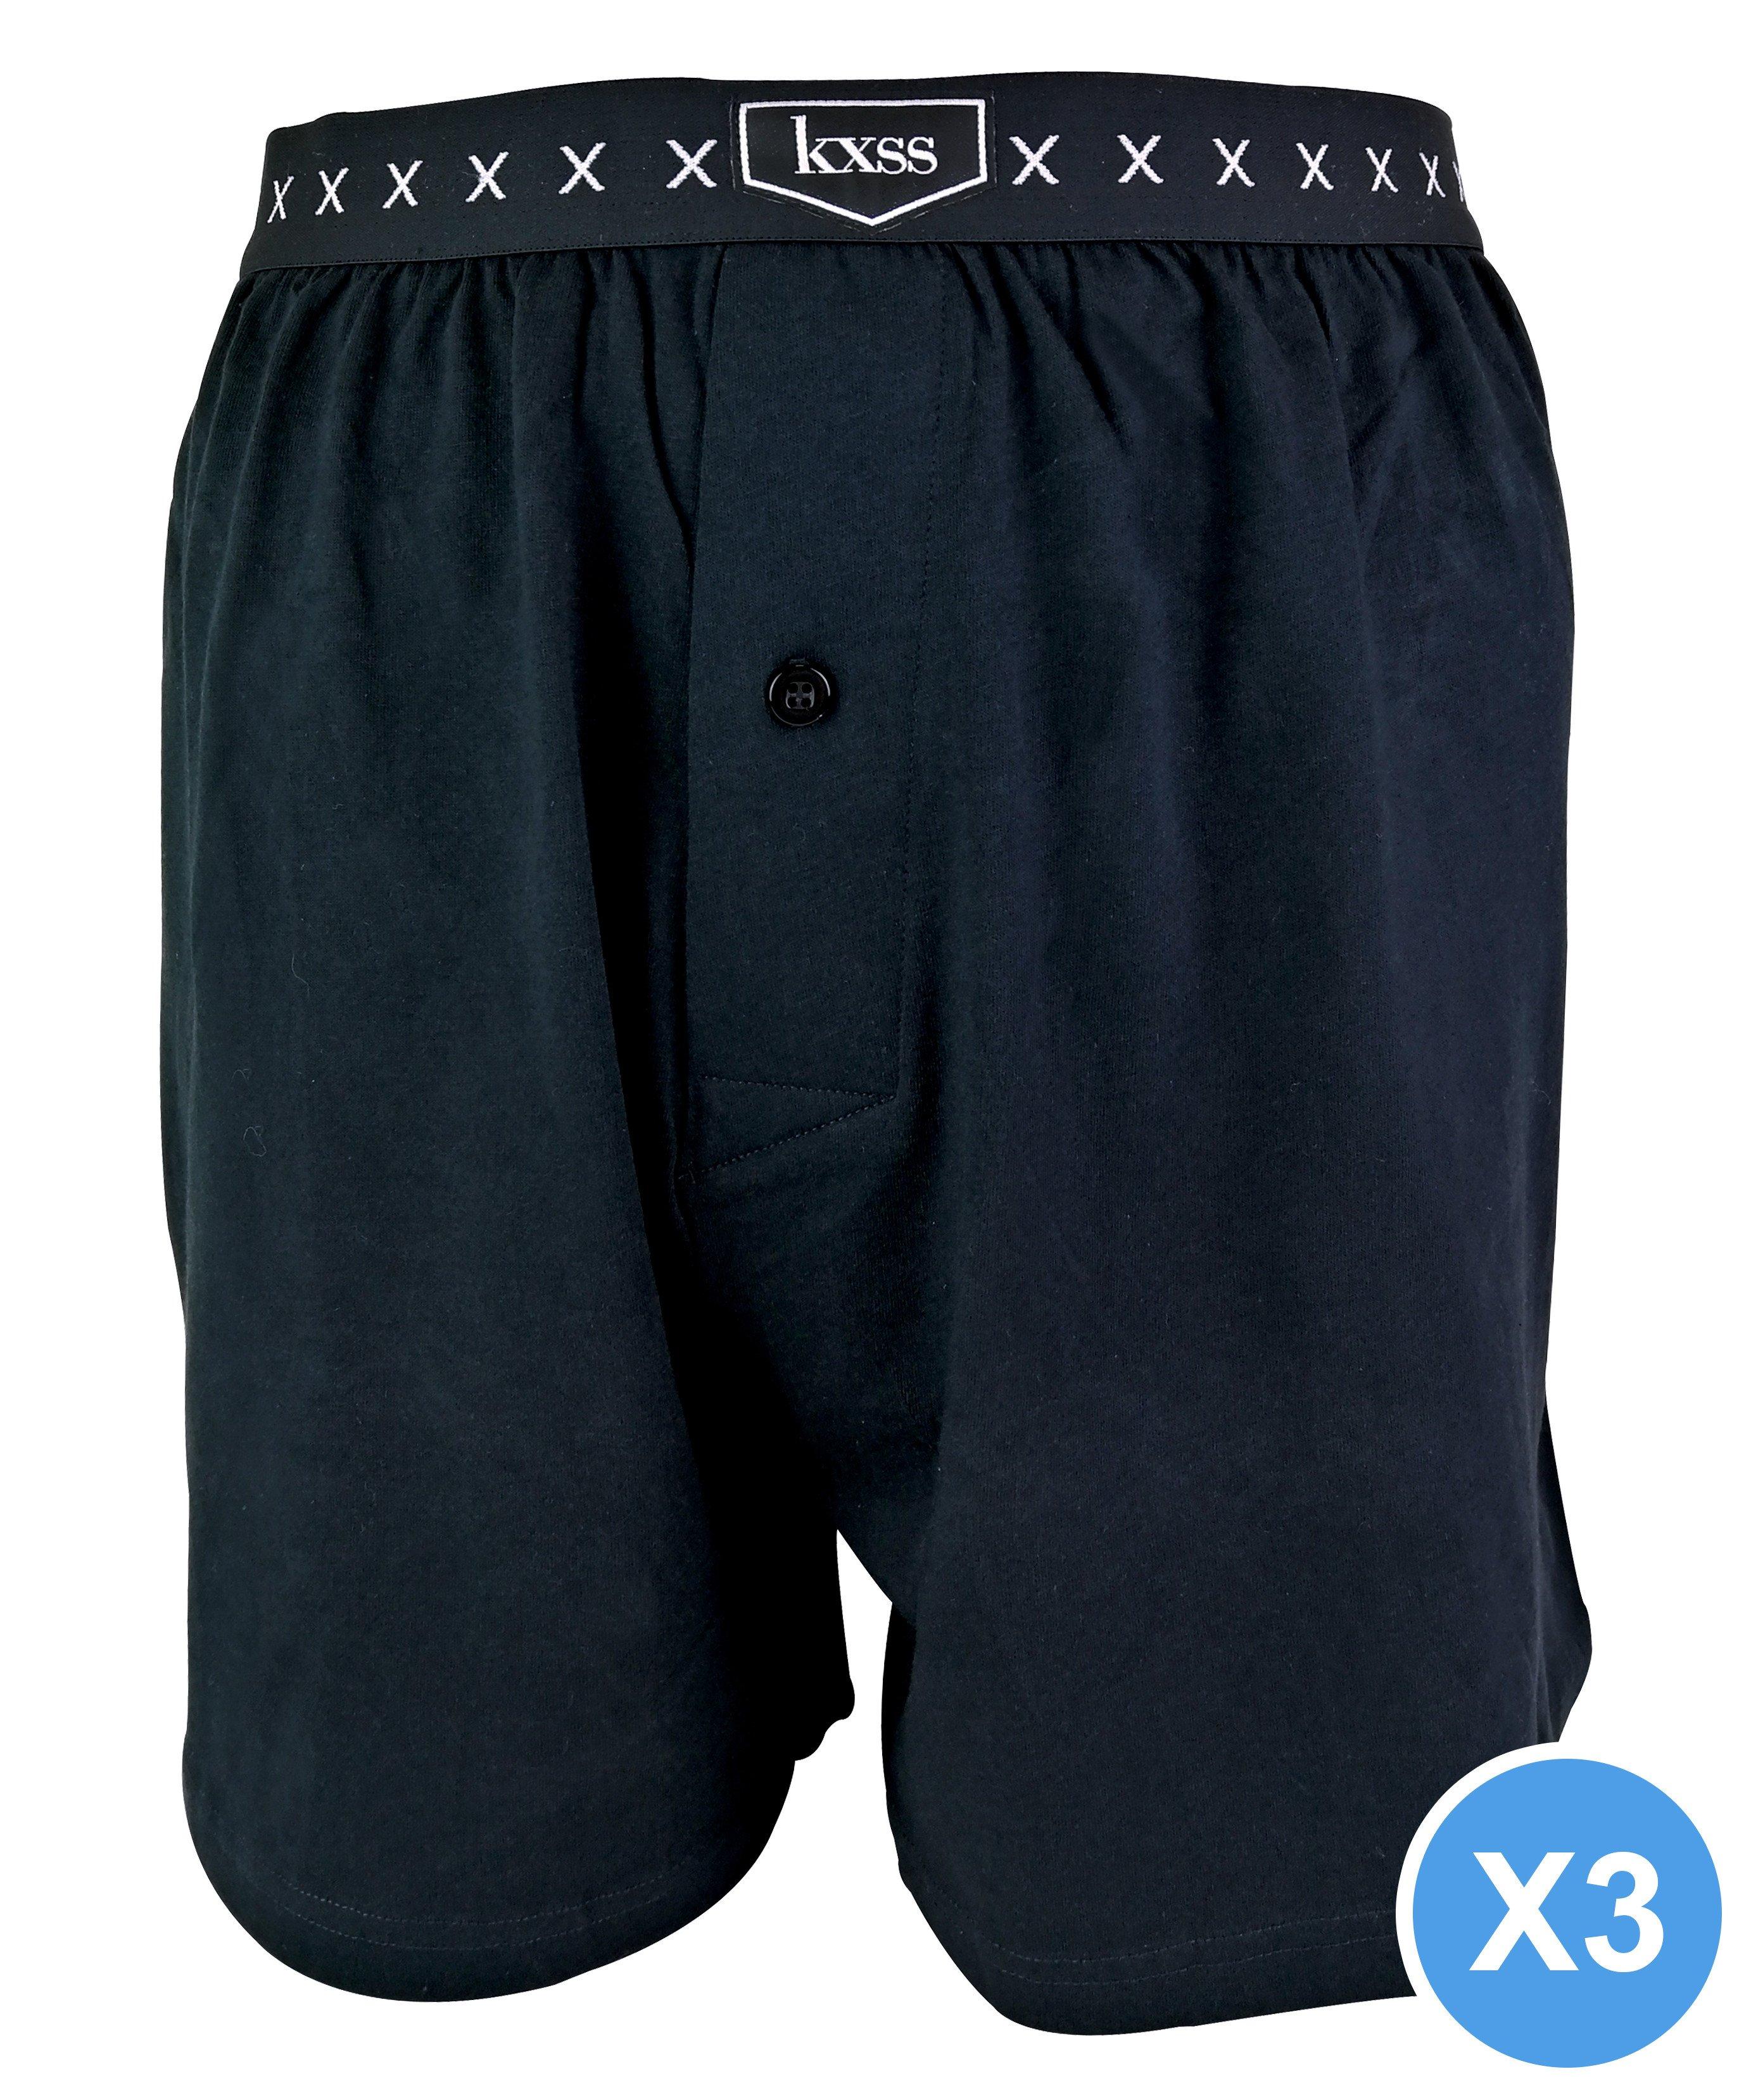 3 Pair Cotton Rich Comfy Breathable Boxer Shorts